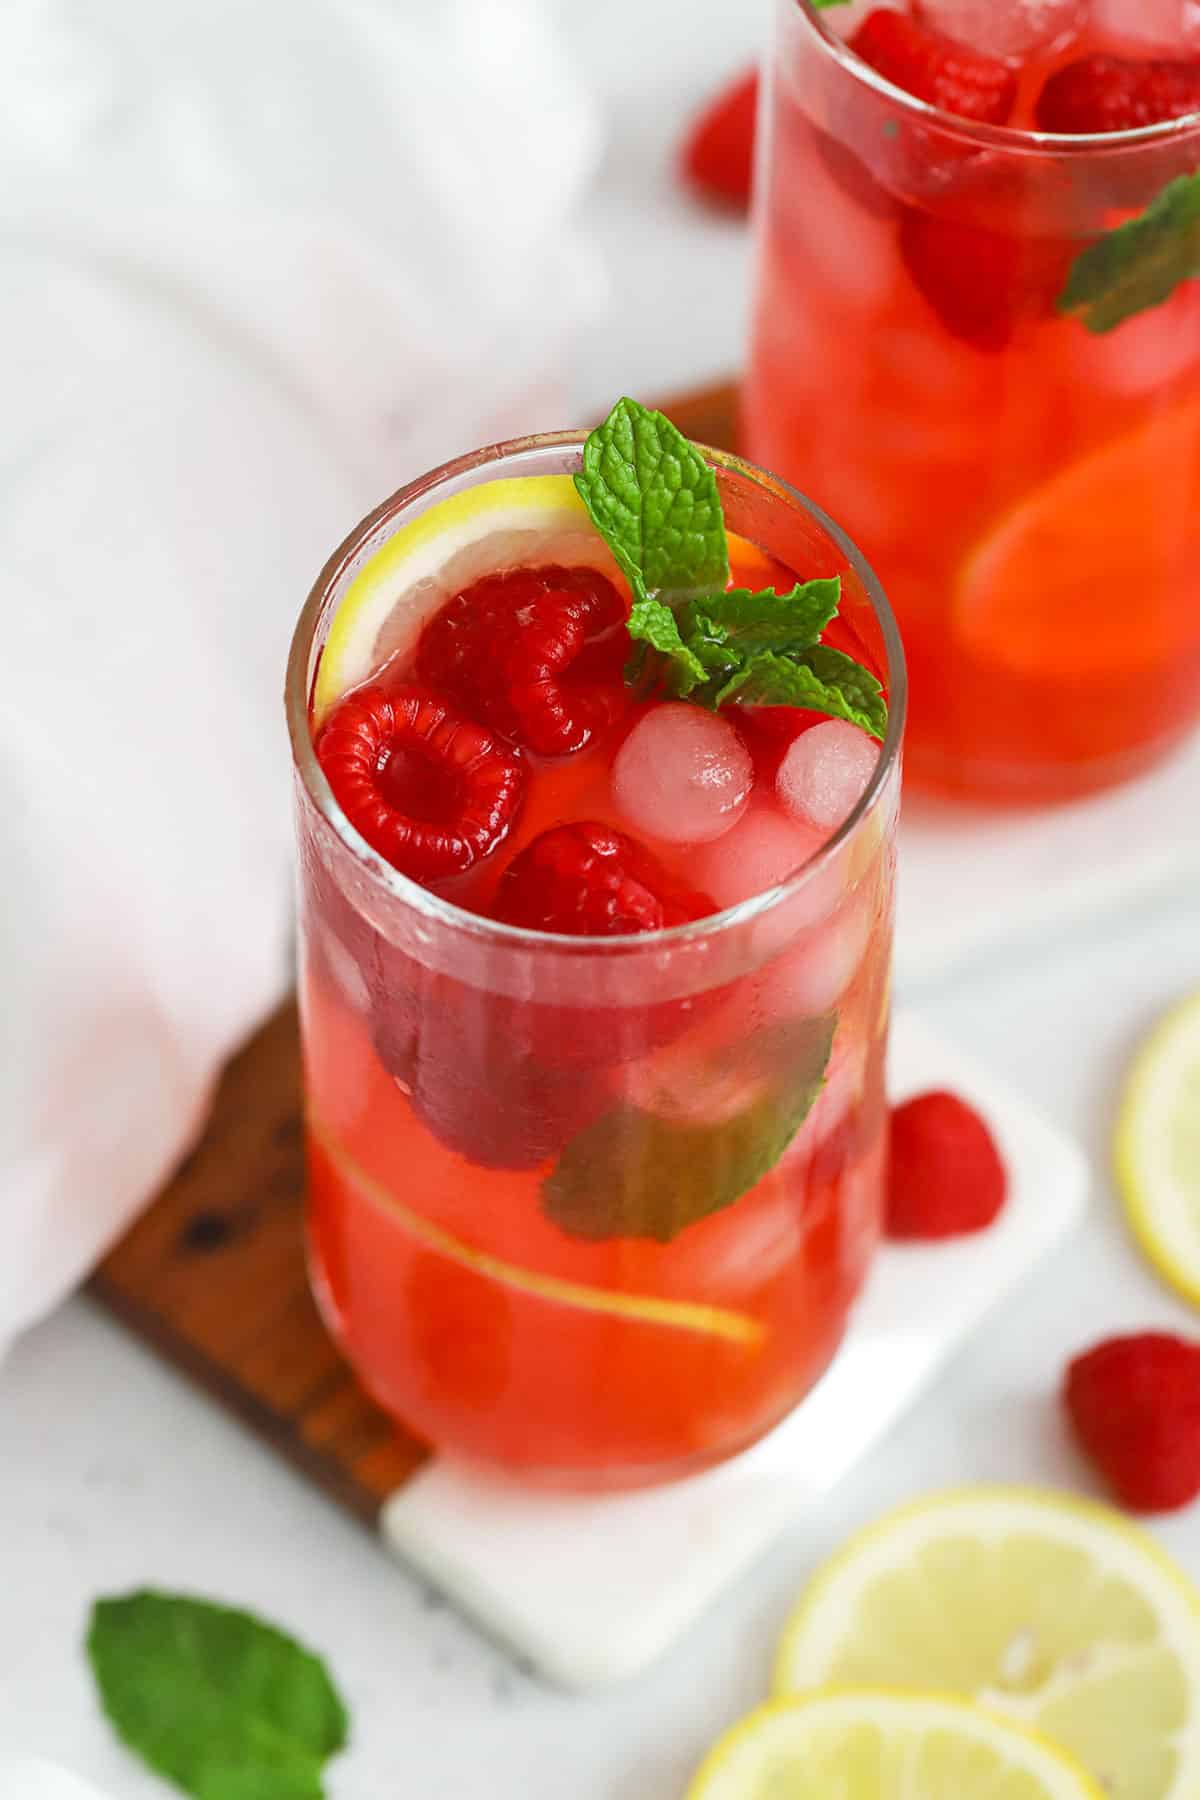 Two glasses of homemade raspberry lemonade with fresh raspberries, fresh mint, and lemon slices